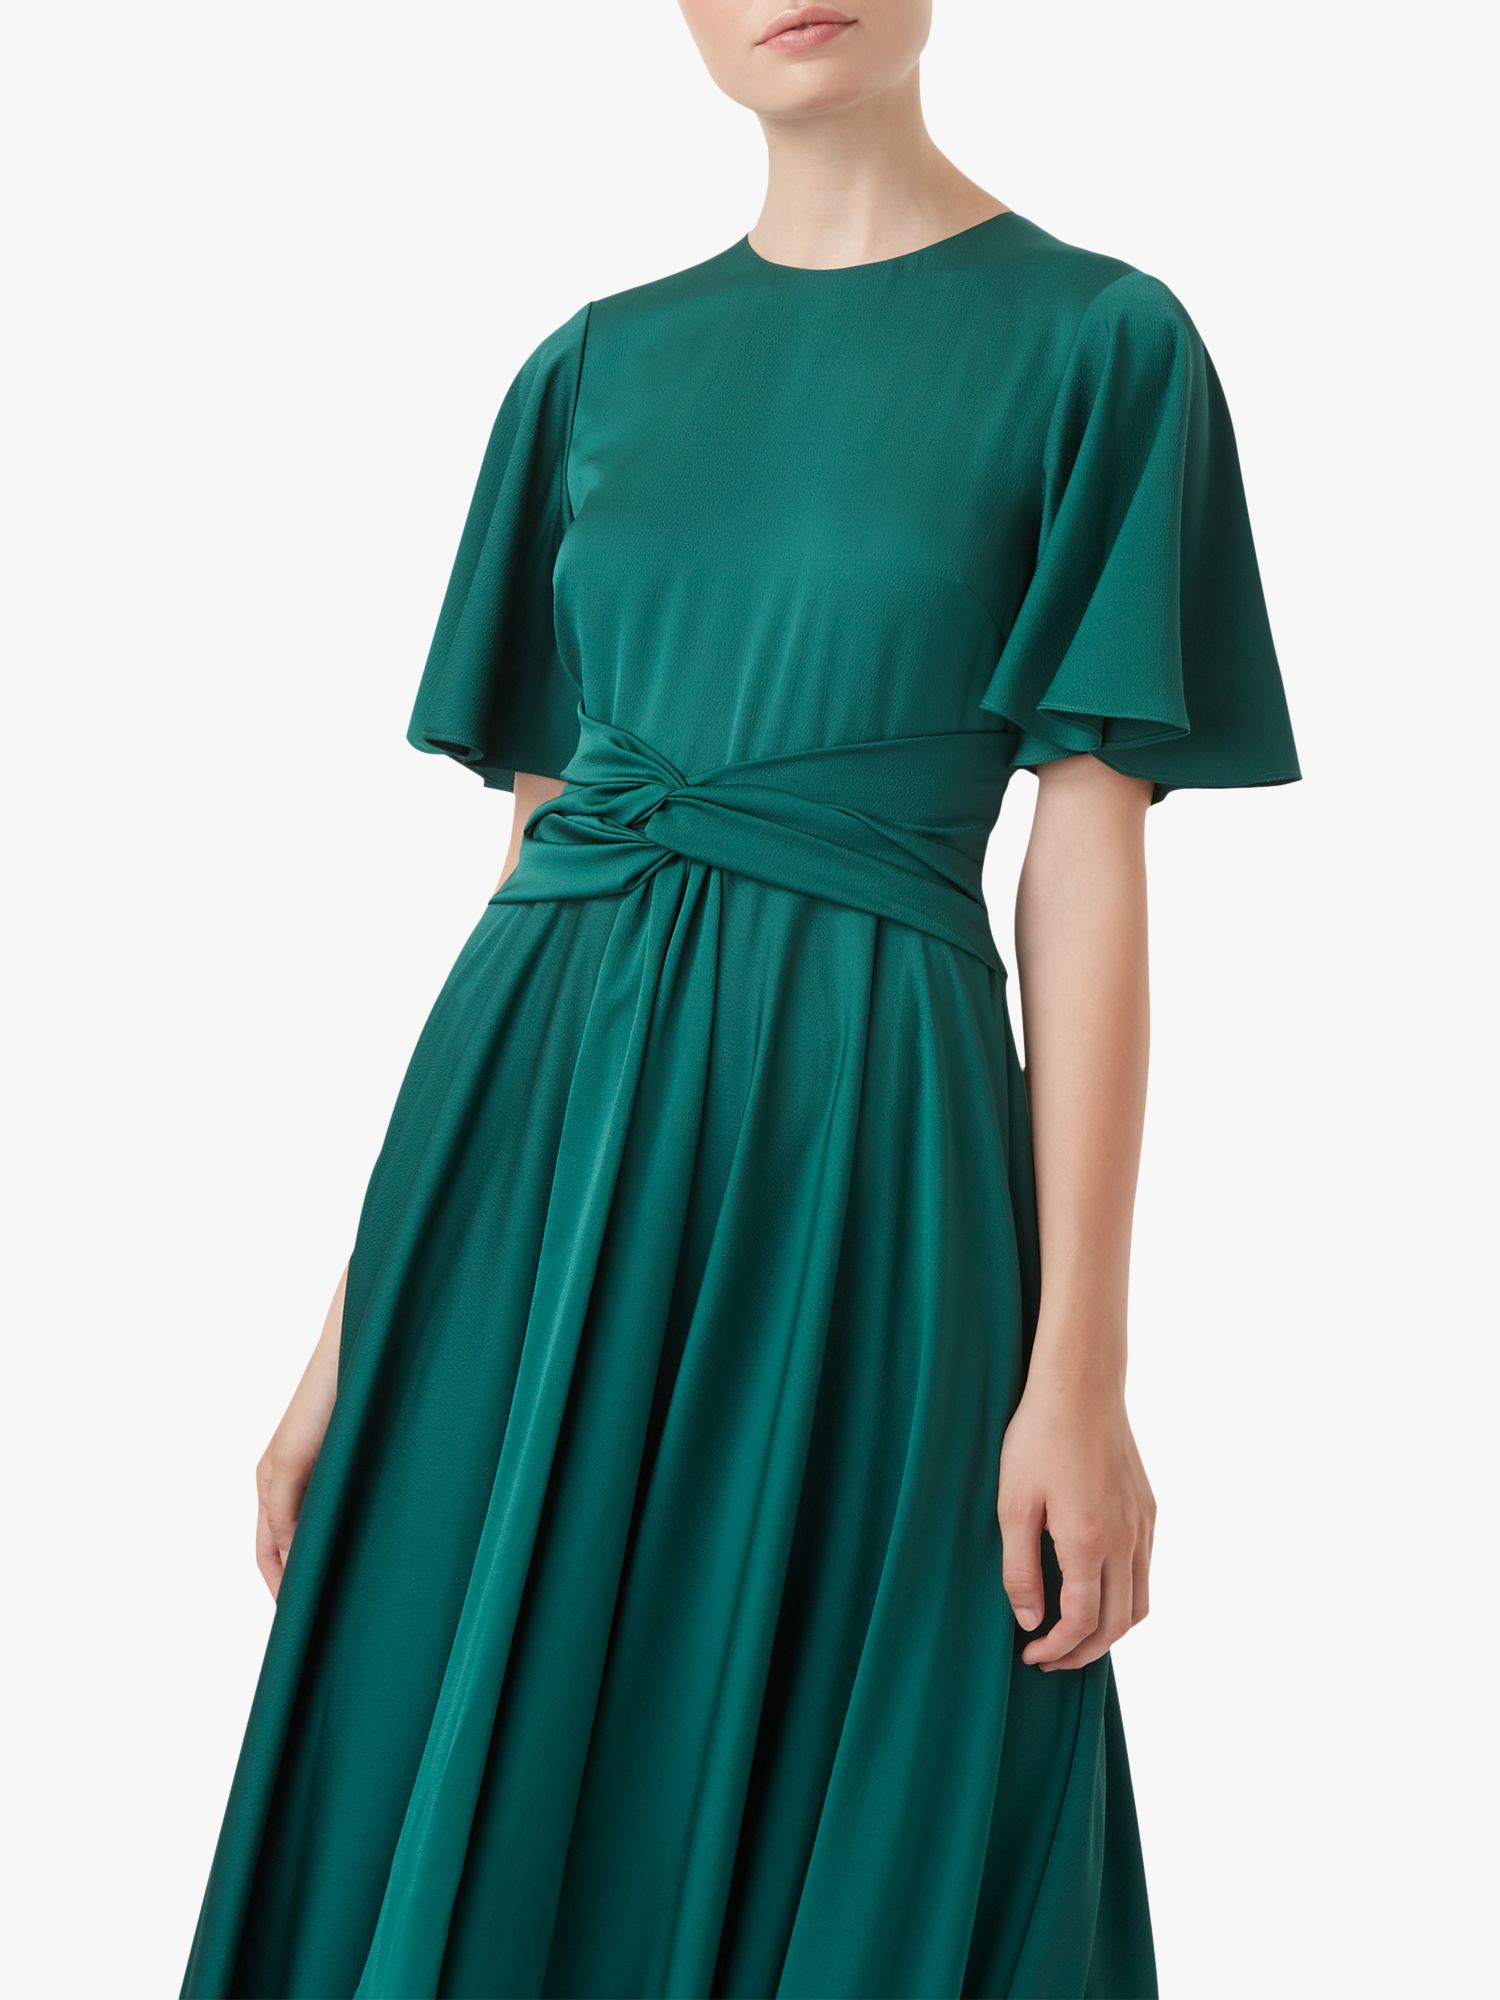 hobbs emerald green dress